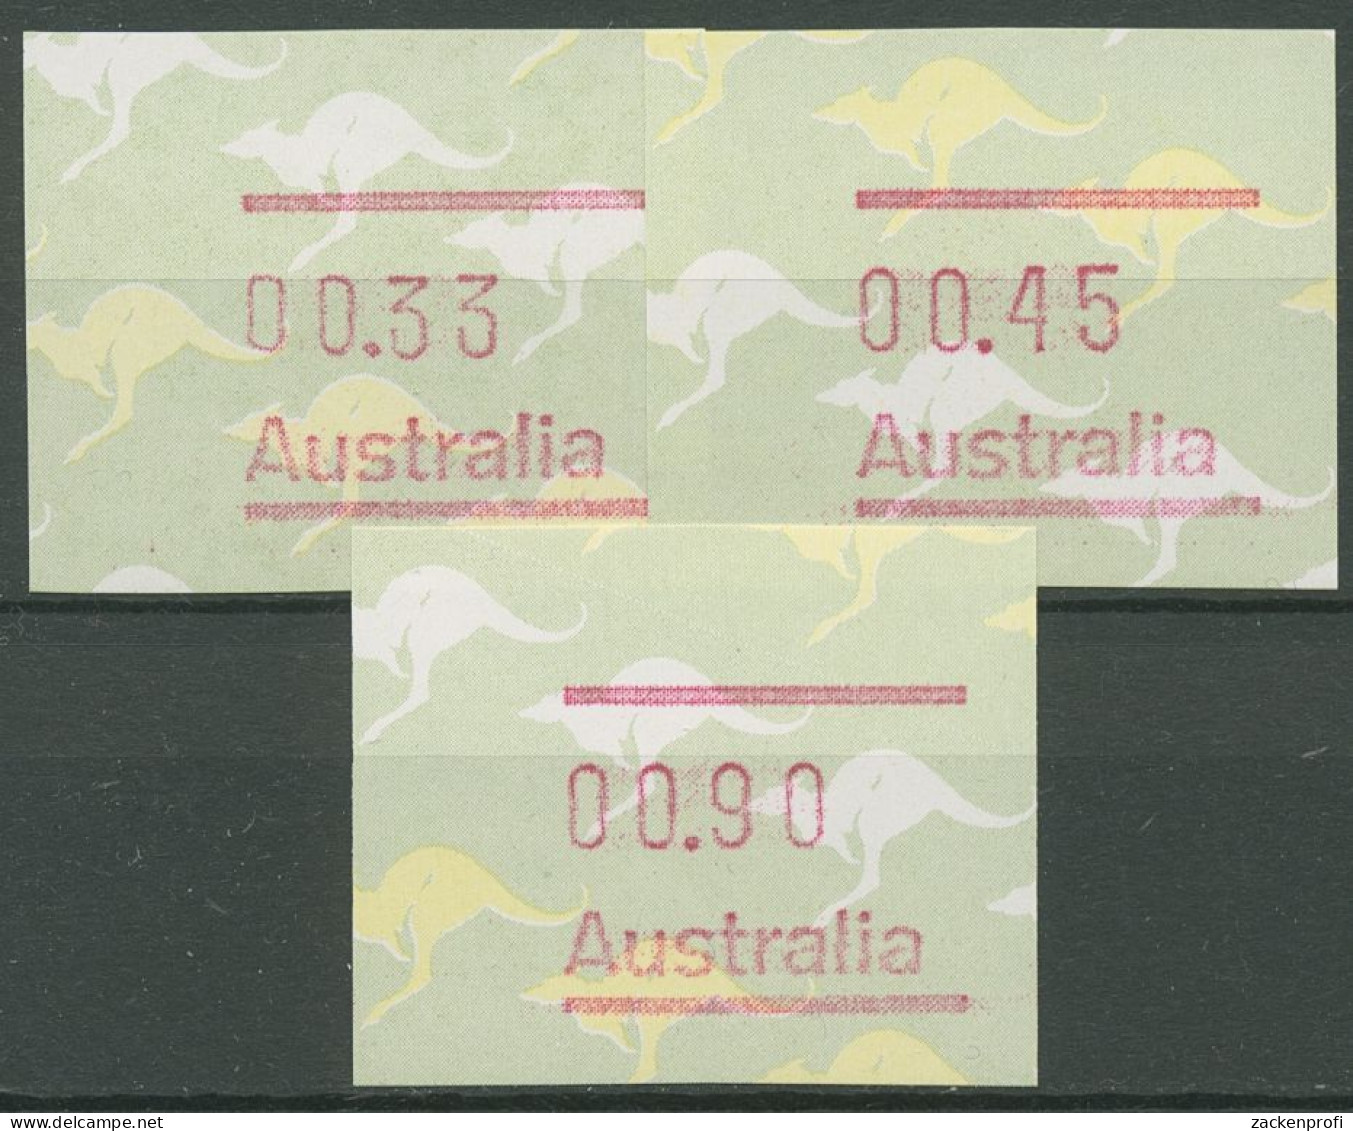 Australien 1985 Känguruh Tastensatz Automatenmarke 3 S1 Postfrisch - Machine Labels [ATM]